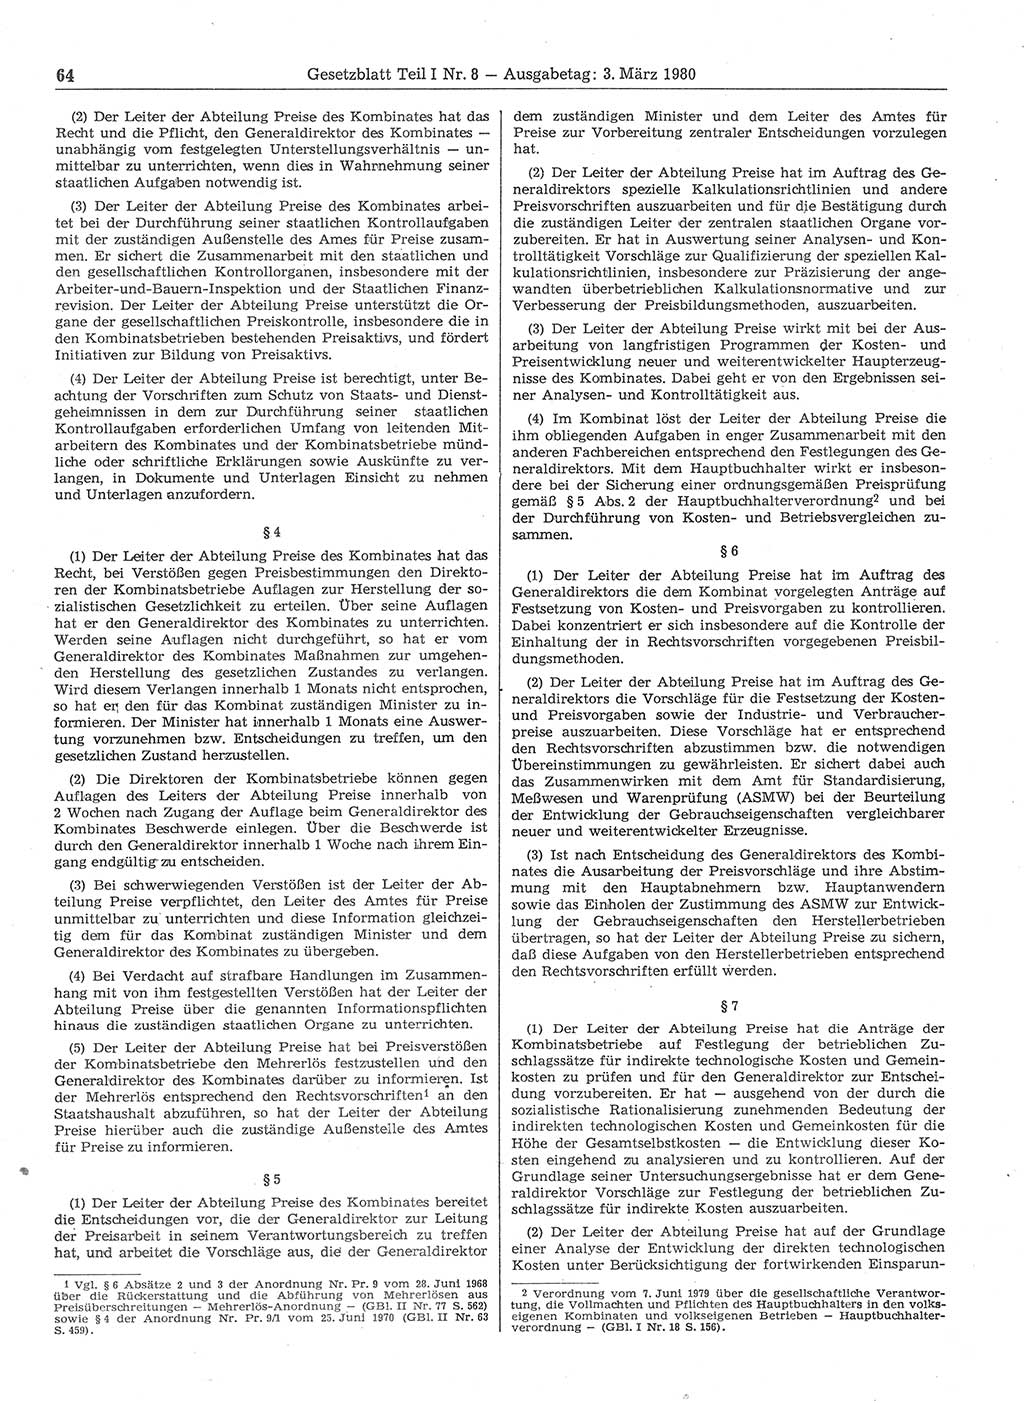 Gesetzblatt (GBl.) der Deutschen Demokratischen Republik (DDR) Teil Ⅰ 1980, Seite 64 (GBl. DDR Ⅰ 1980, S. 64)